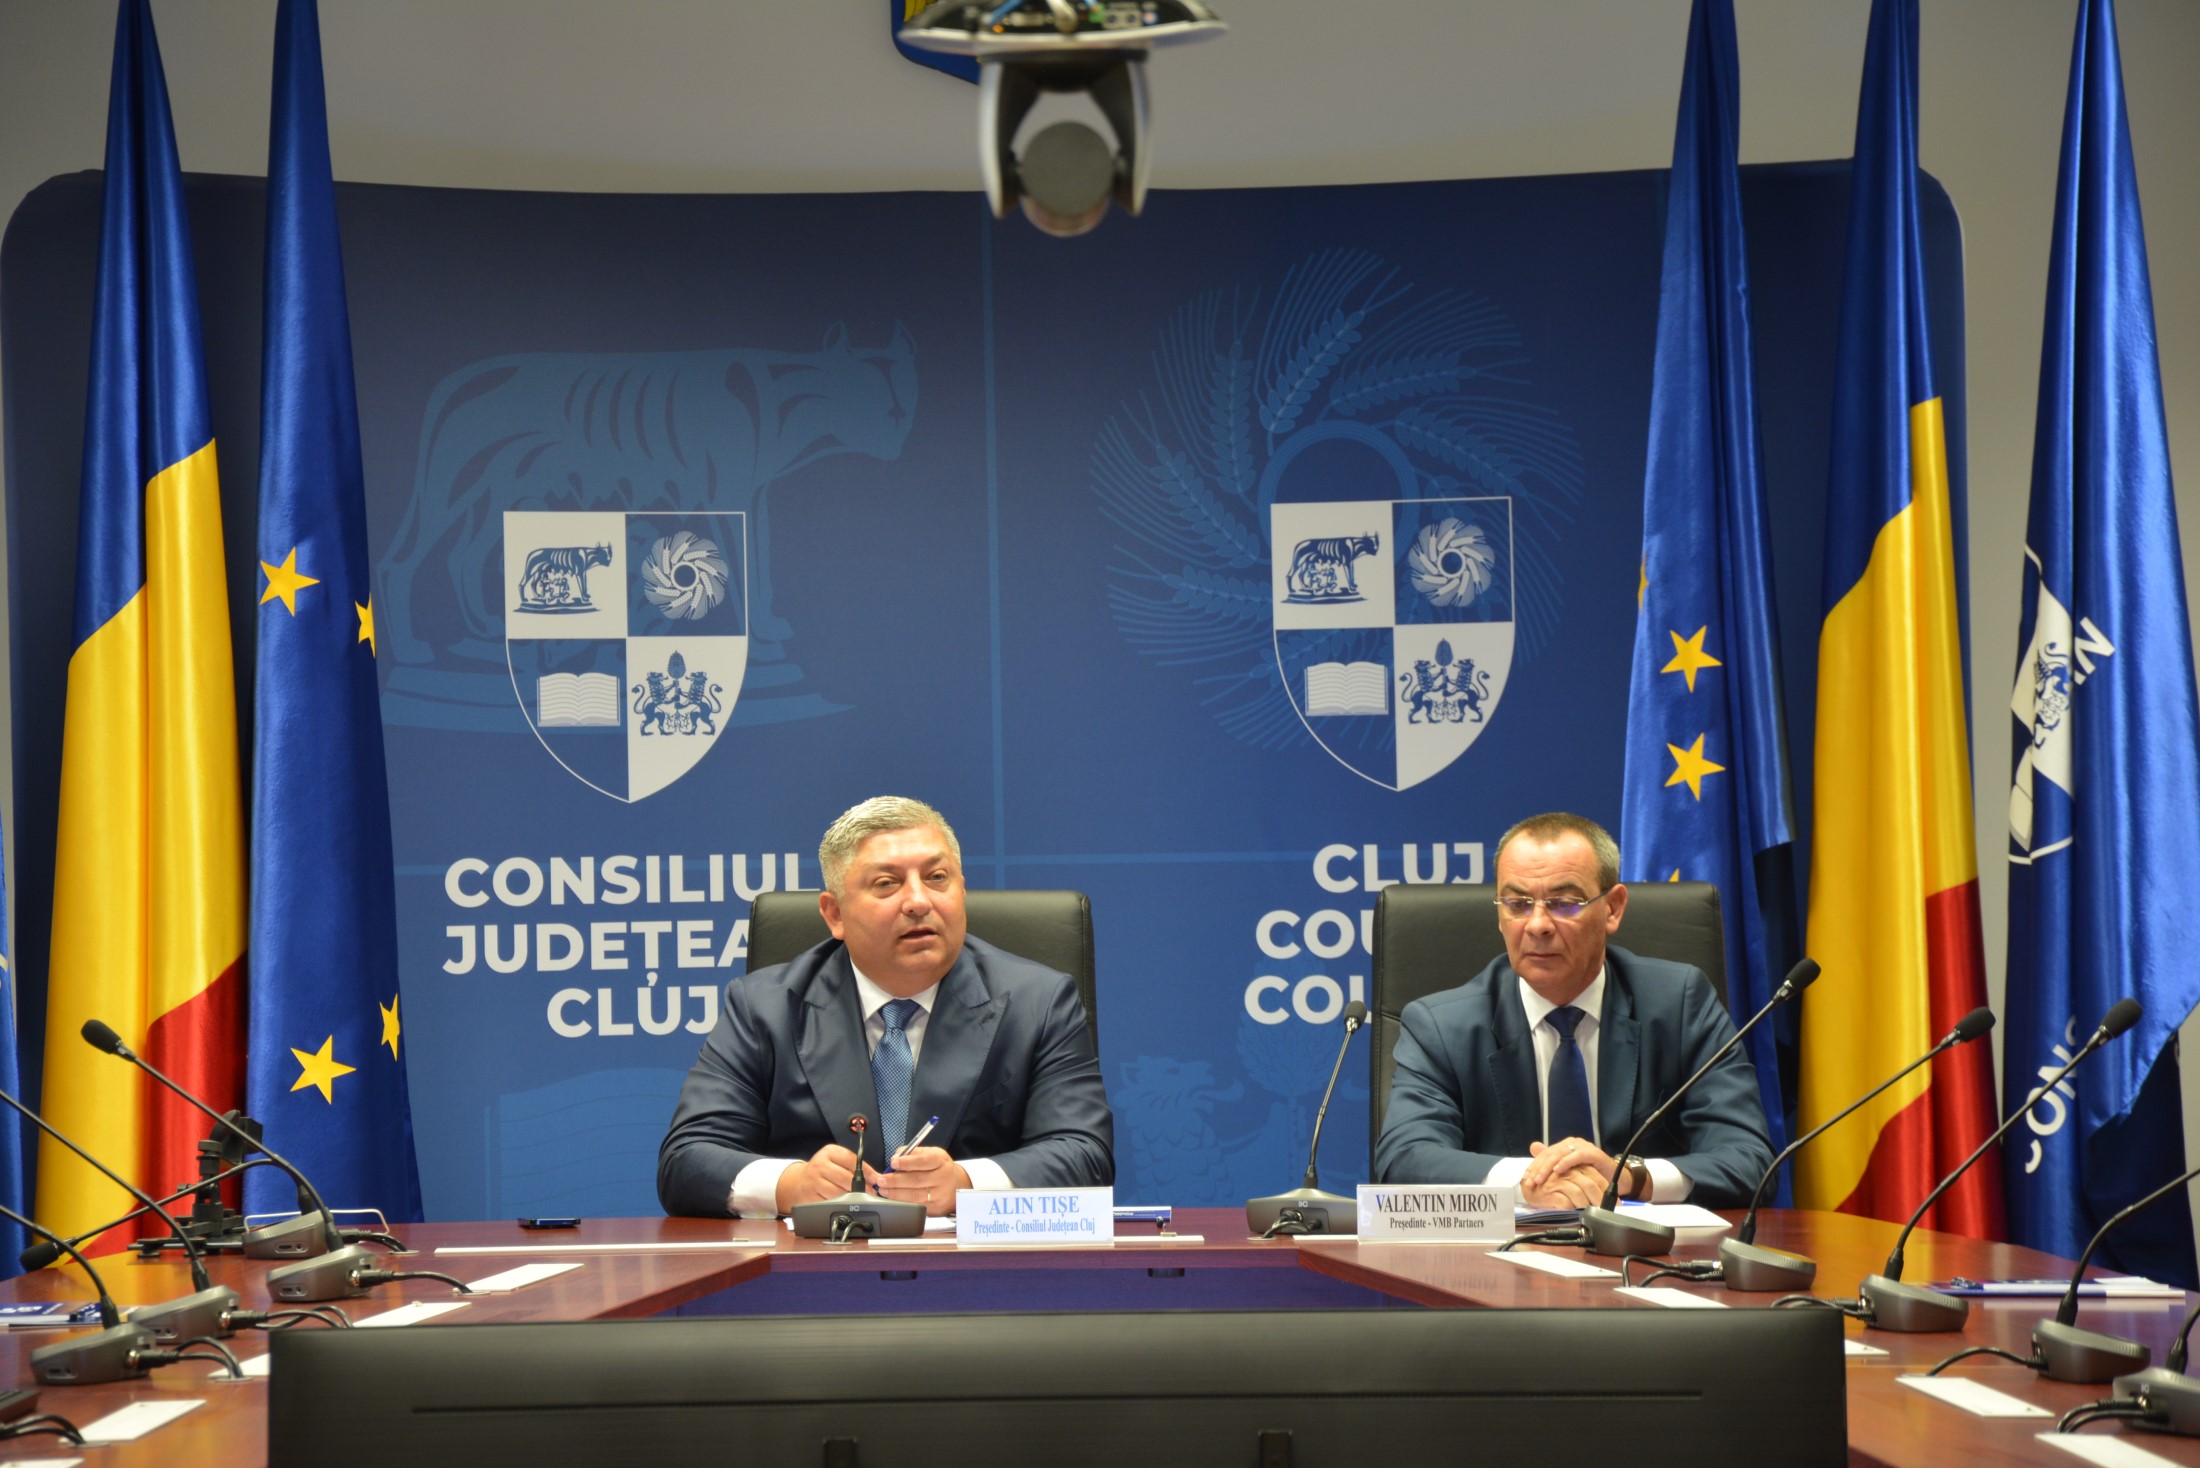 Subscrierea obligațiunilor emise de Județul Cluj a fost încheiată cu succes